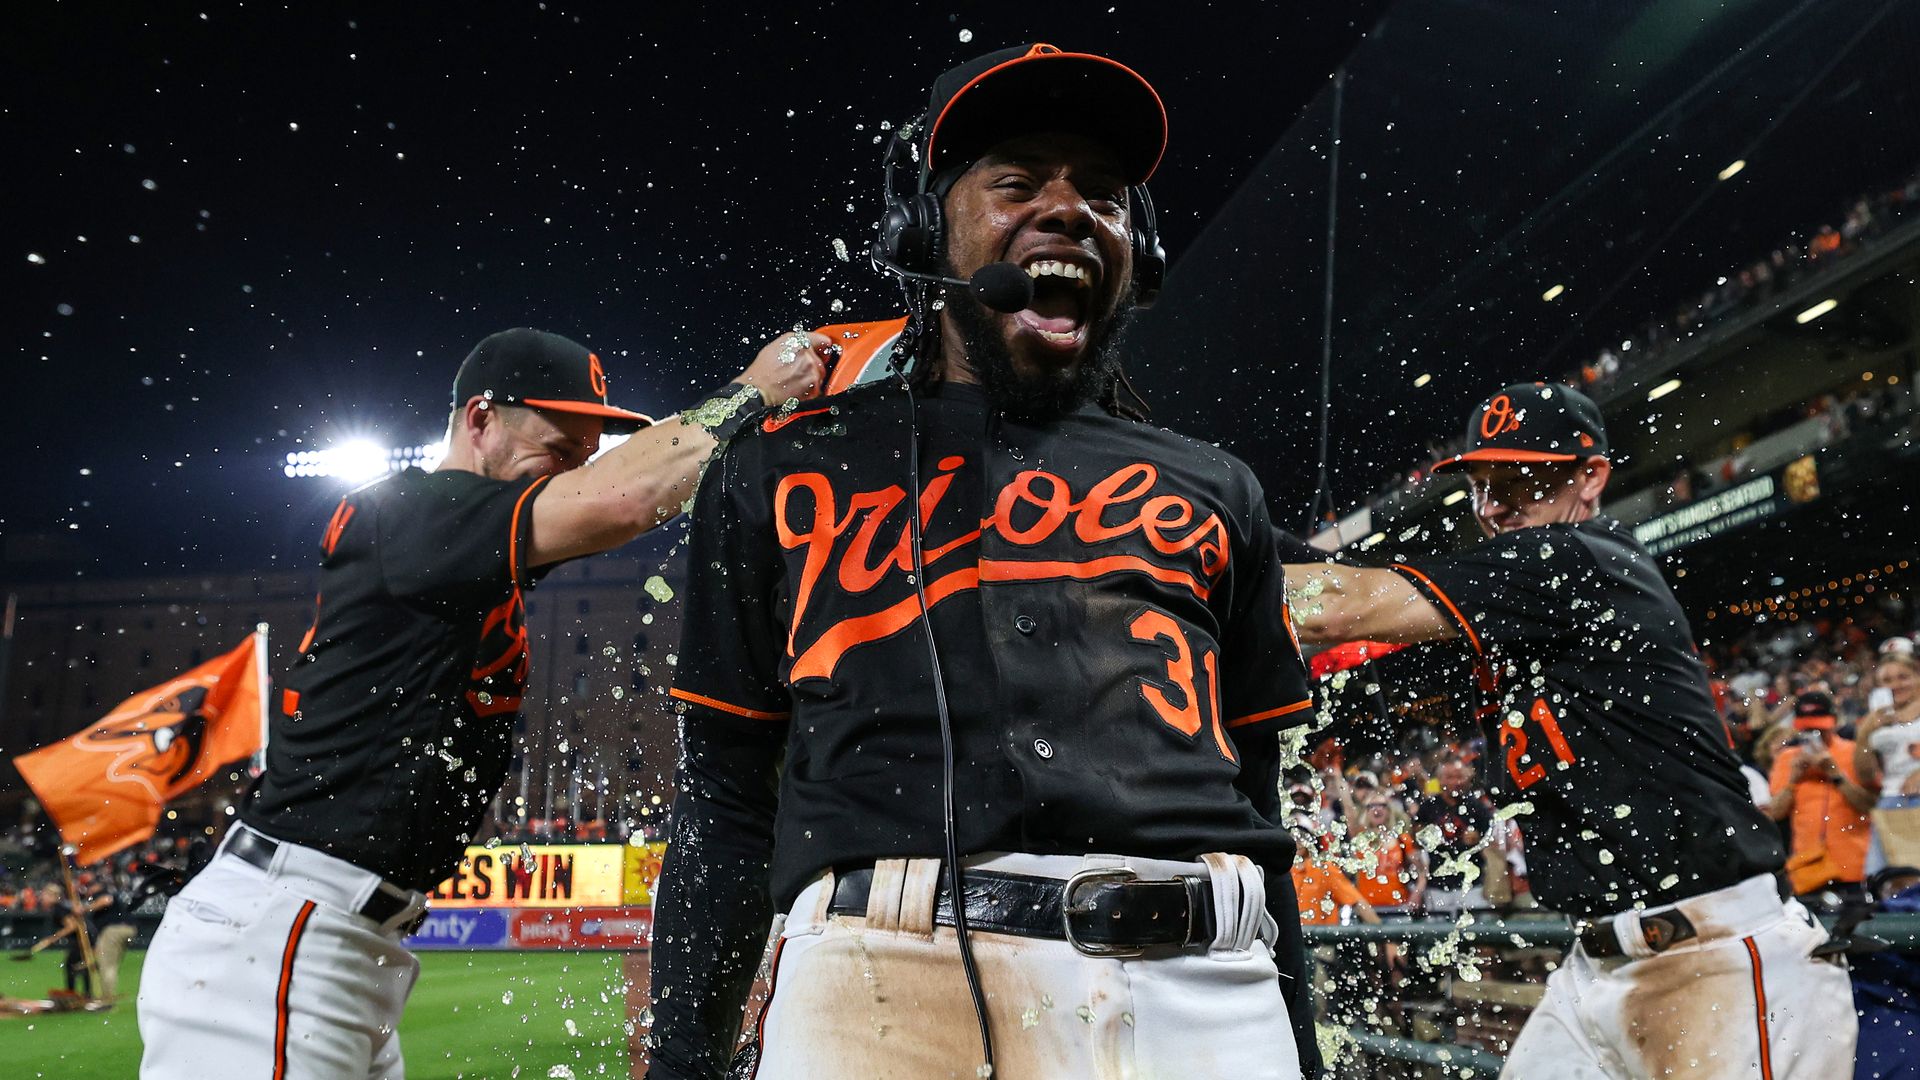 Orioles HD Wallpaper  Baltimore orioles baseball, Orioles